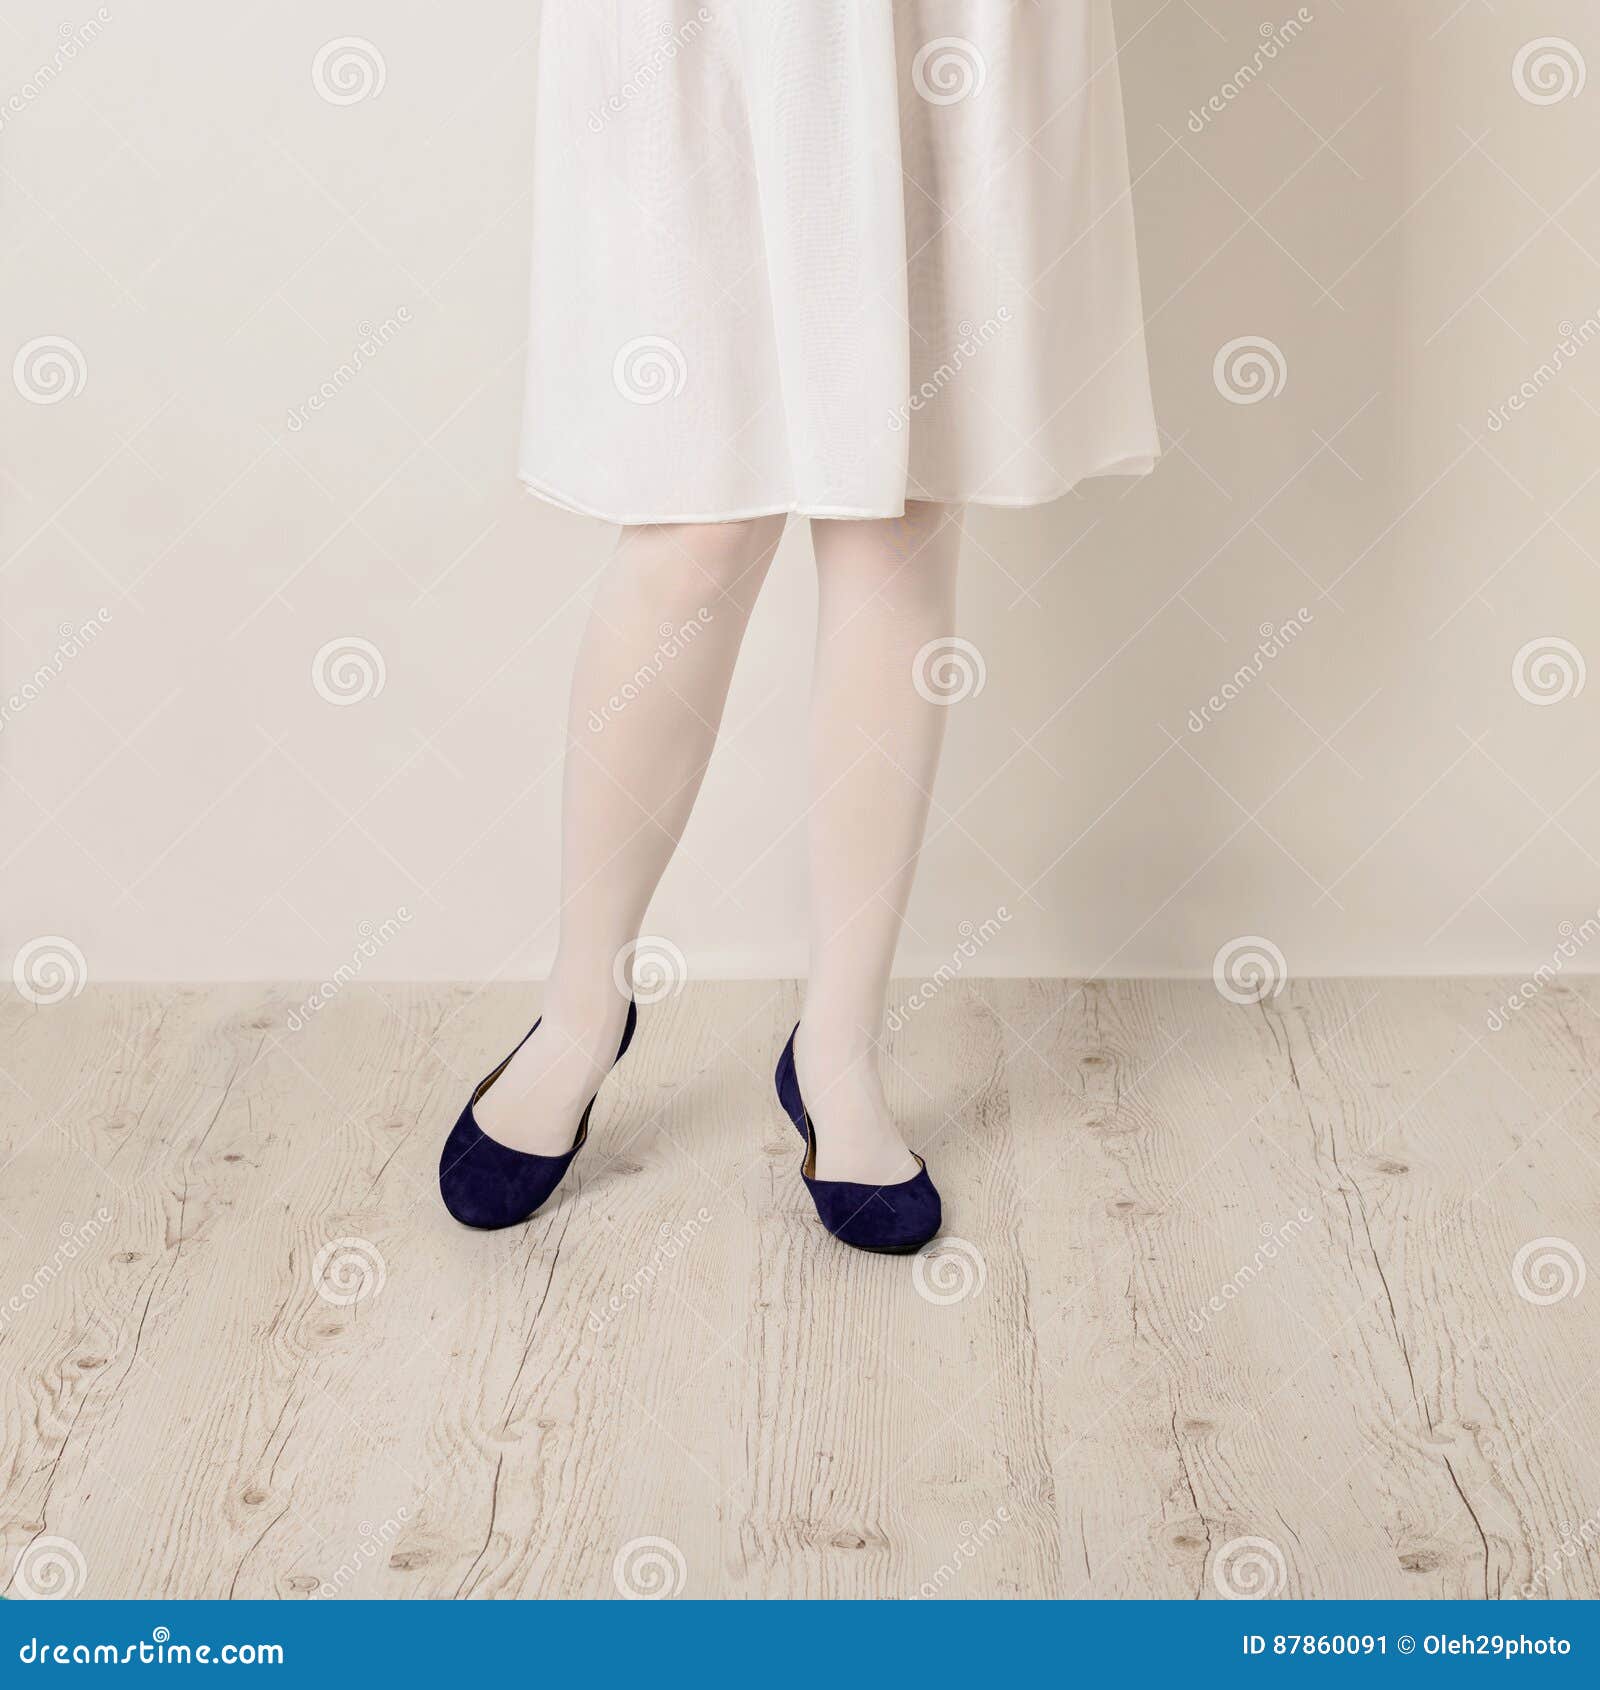 https://thumbs.dreamstime.com/z/female-legs-white-tights-skirt-ballet-flats-white-b-background-selective-focus-87860091.jpg